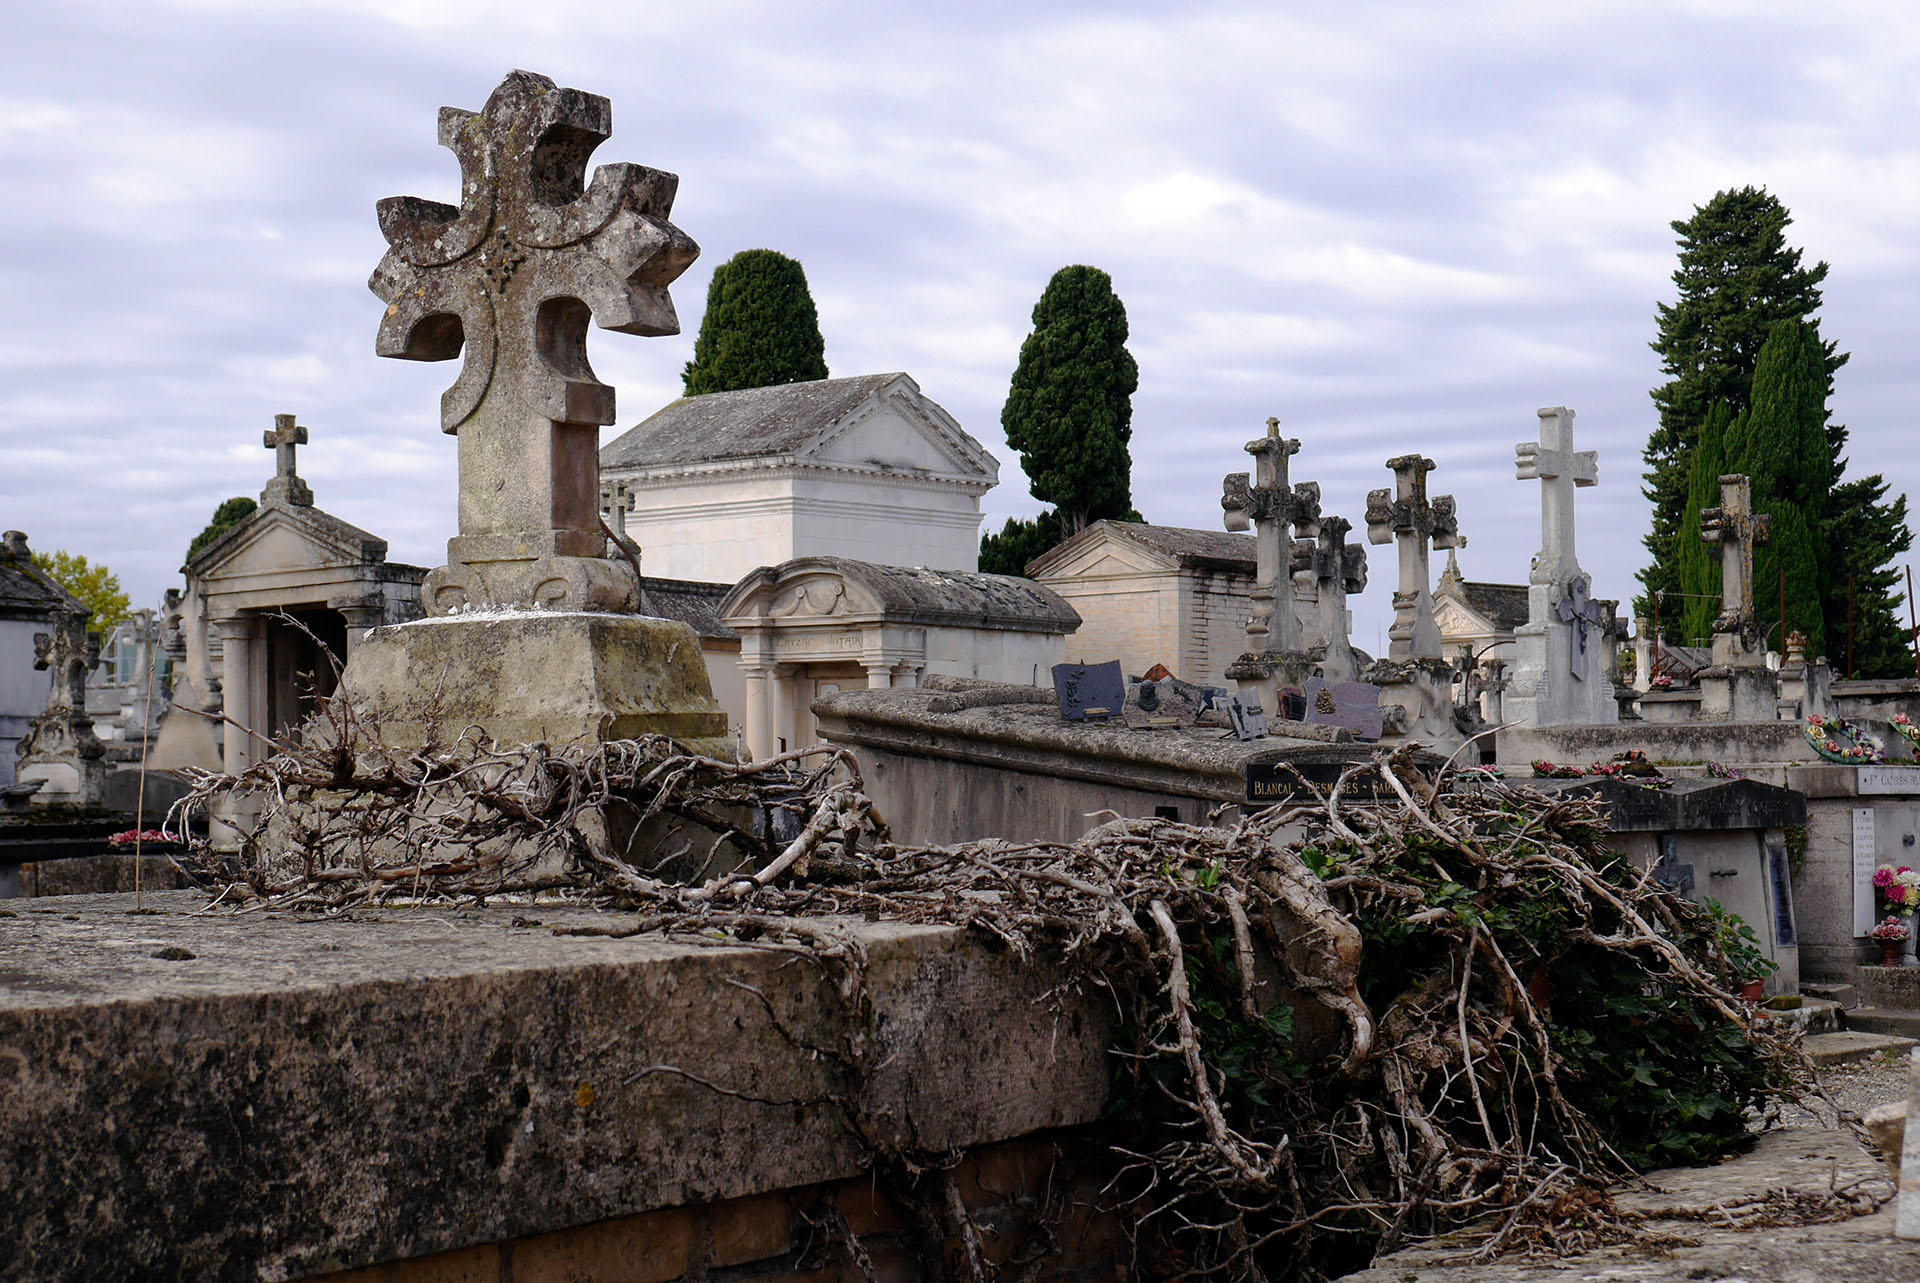 Tombes du cimetière de Montauban France Graves in Montauban cemetery France